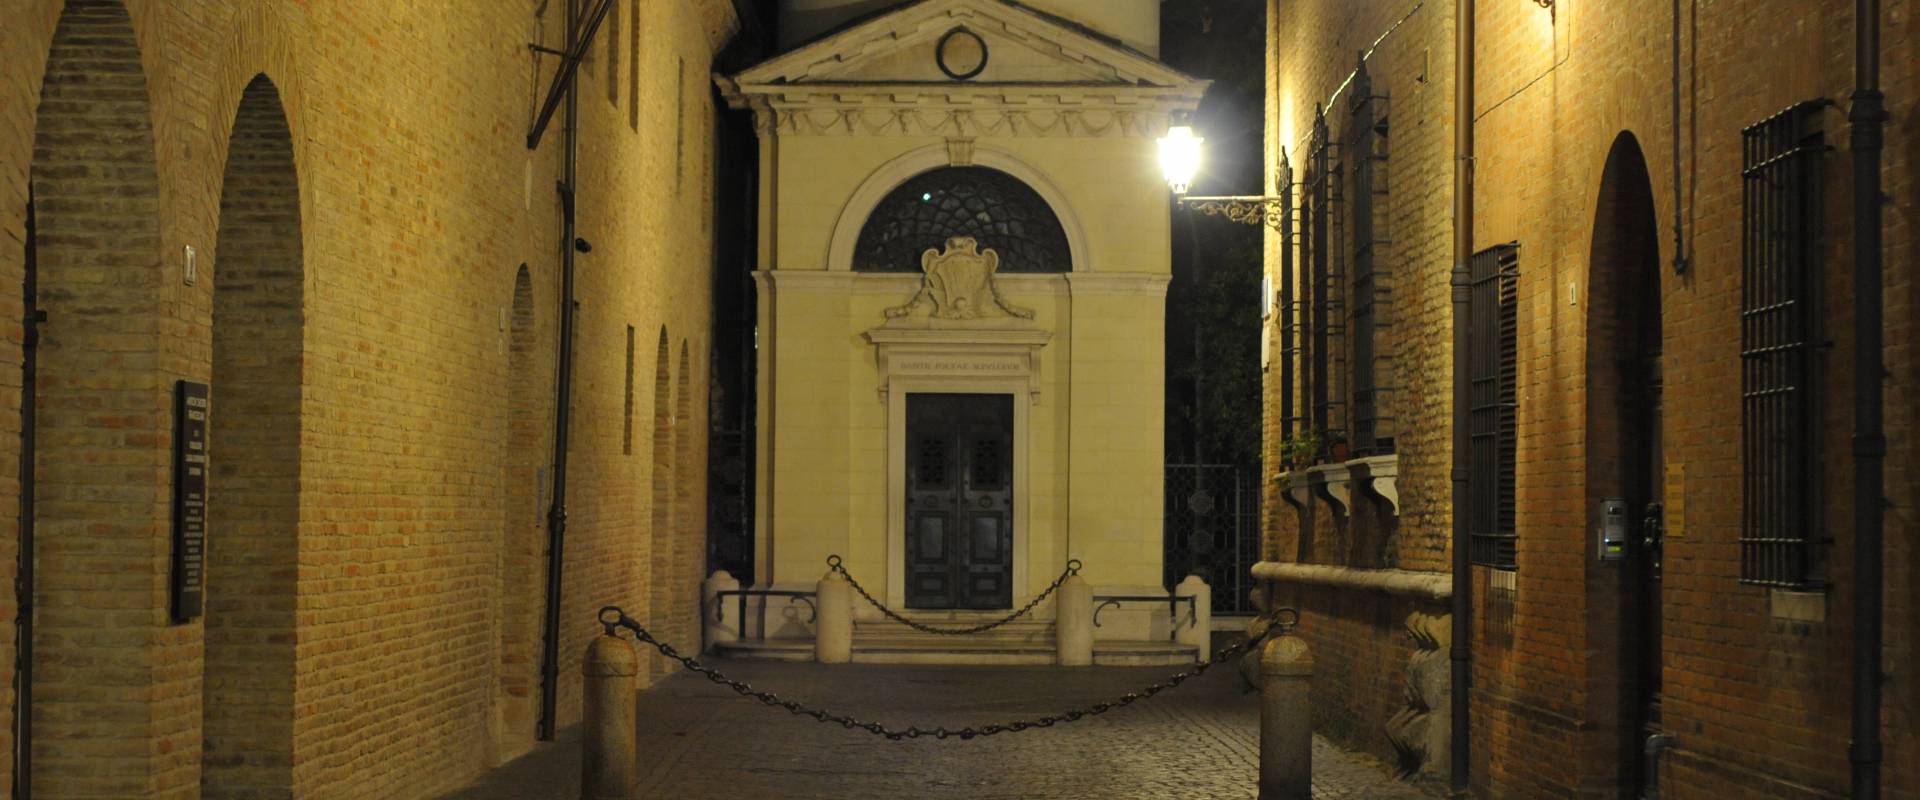 Tomba di Dante Ravenna photo by Lorenzo Gaudenzi